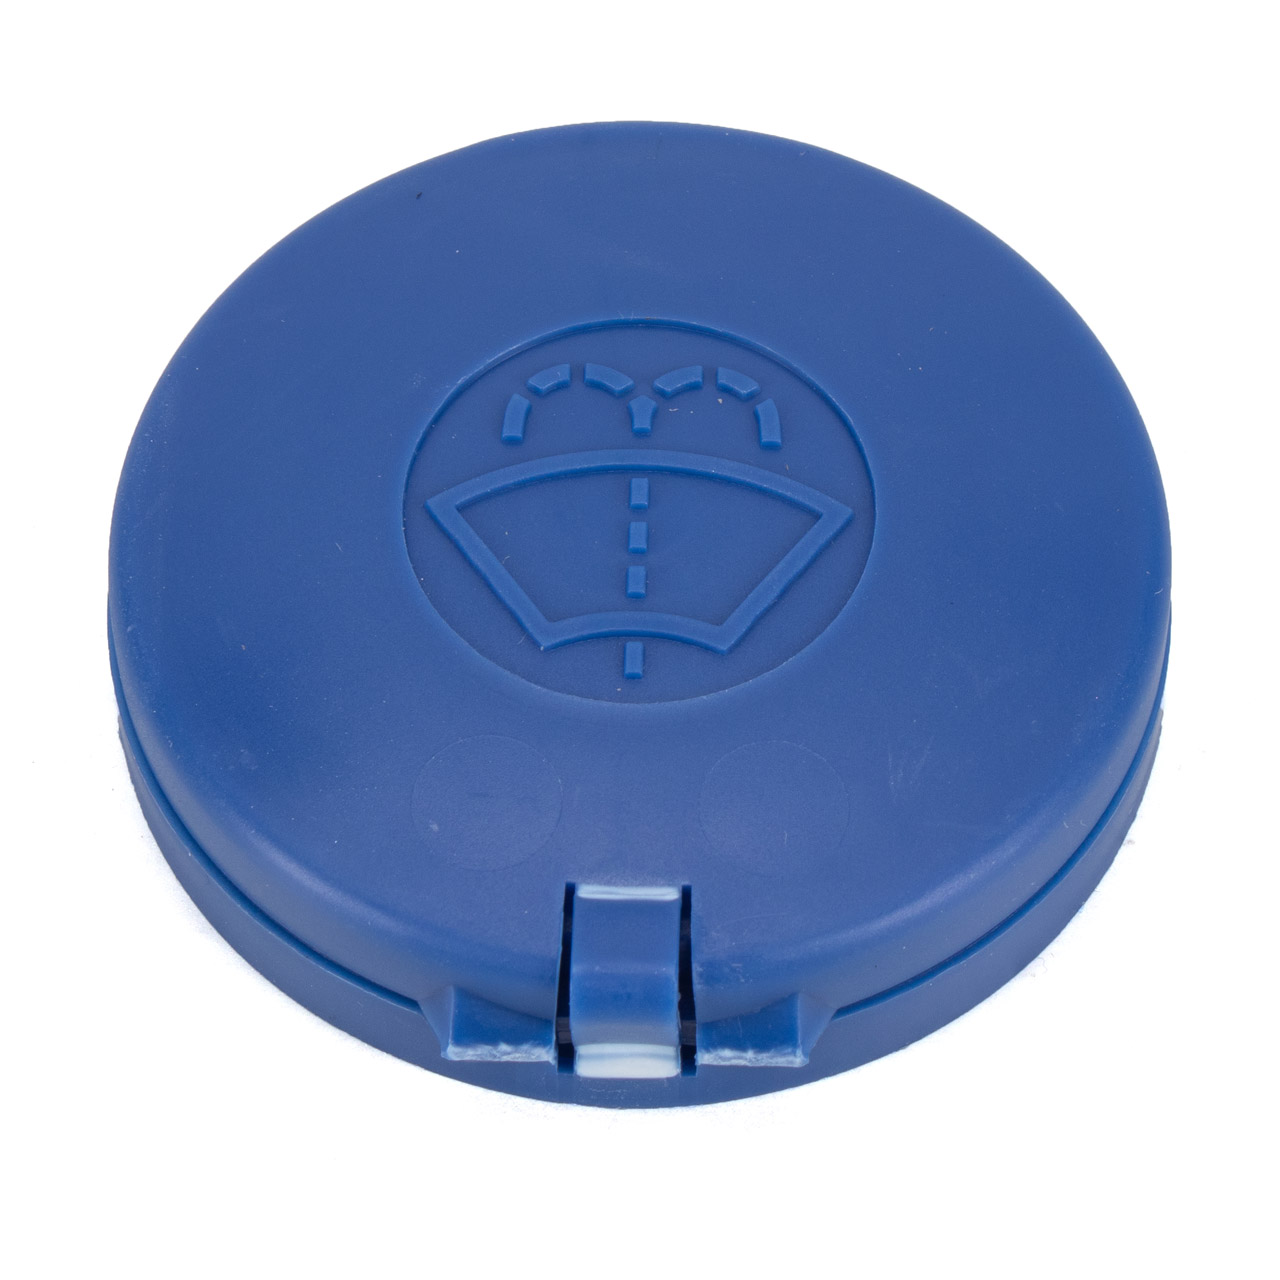 ORIGINAL PSA Verschlussdeckel Kappe Waschwasserbehälter C1 107 1.0 1.4 6405.W0